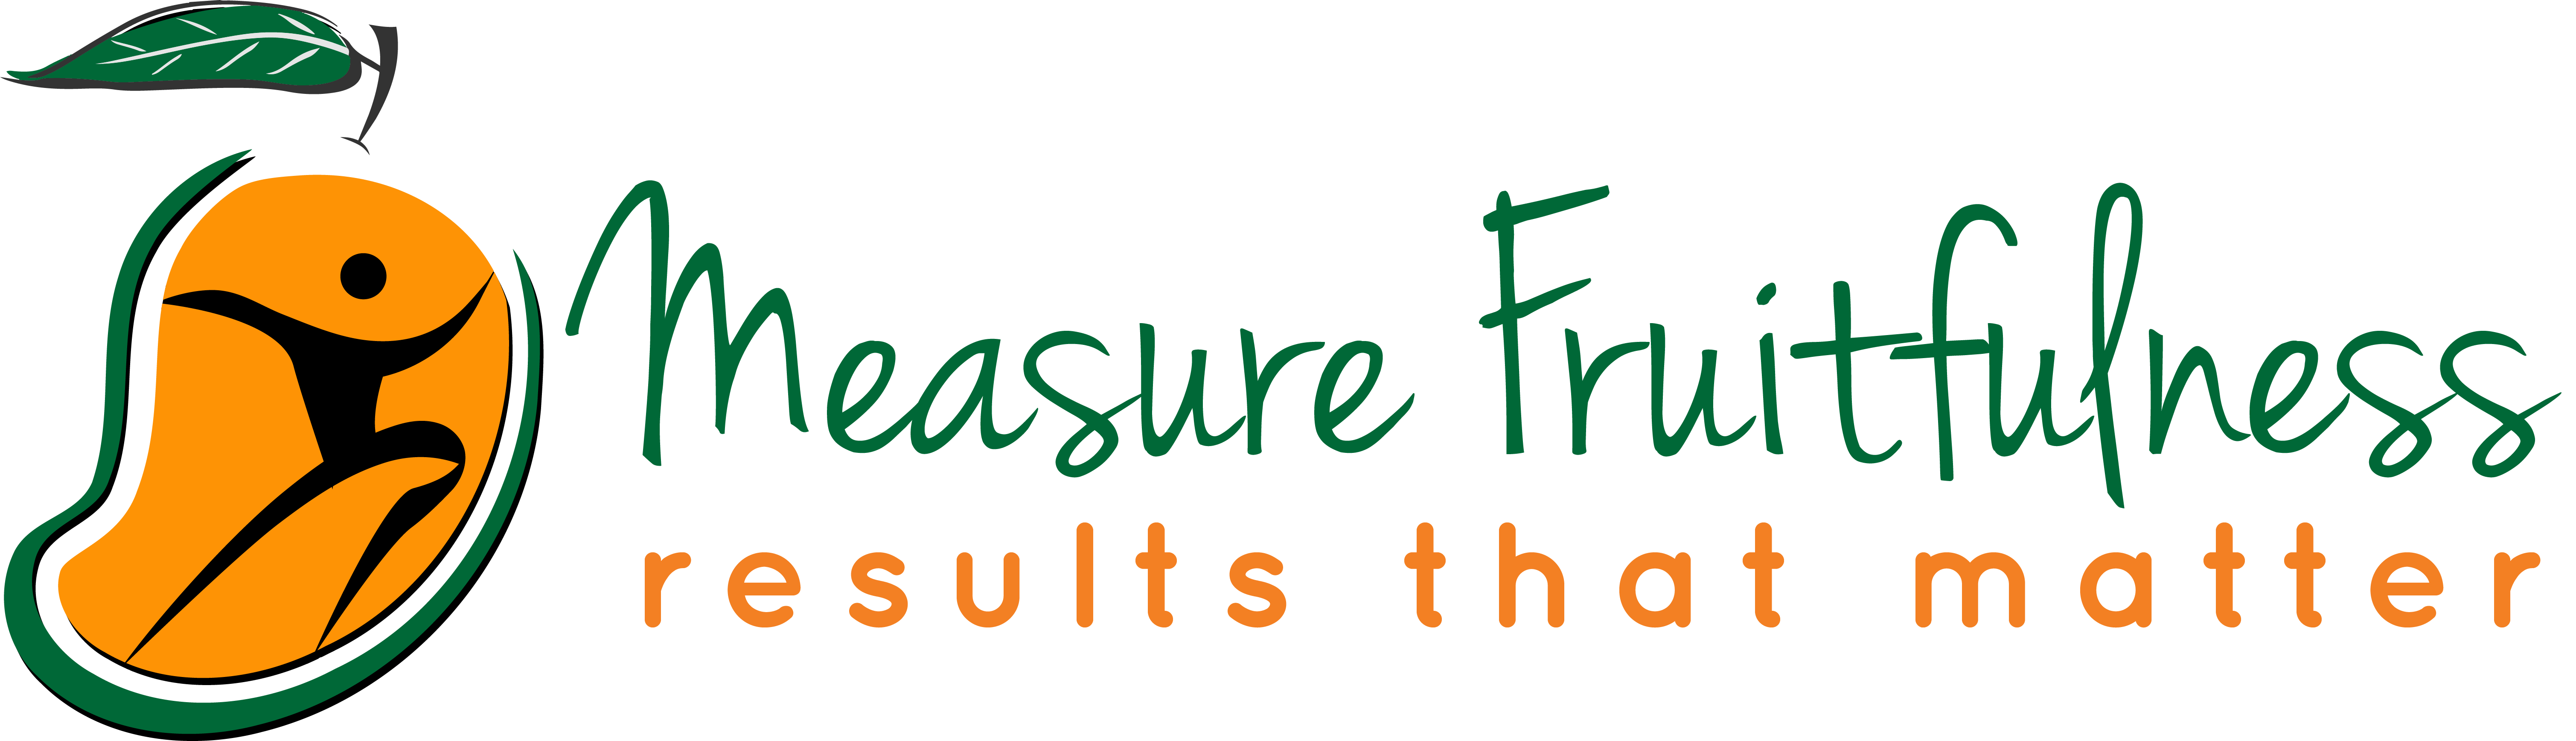 Thormoset - Measure Fruitfulness